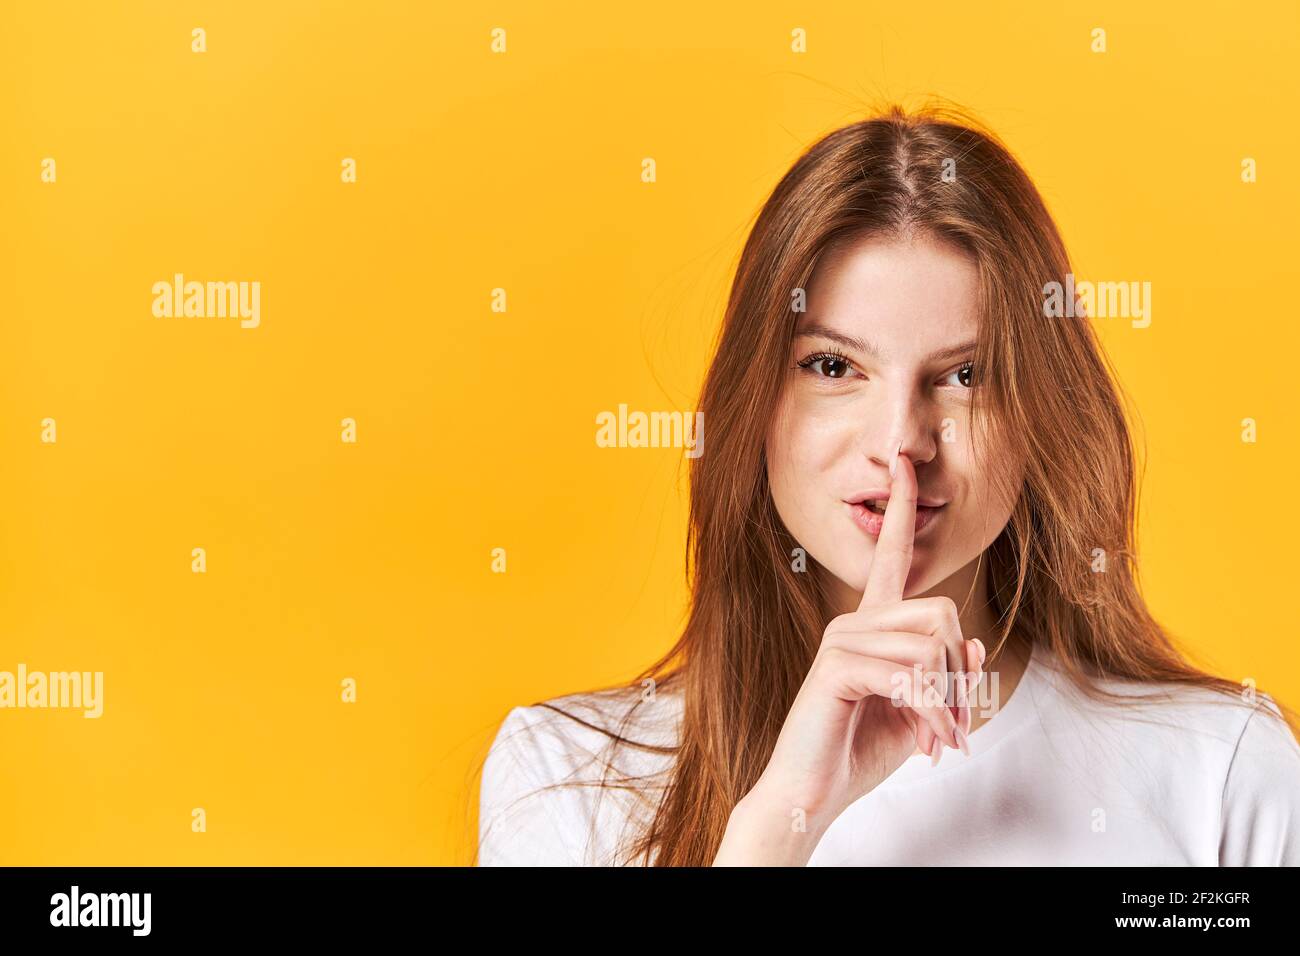 Ritratto giovane ragazza, mostrando silenzio con le labbra che toccano le dita. Isolato su sfondo giallo brillante Foto Stock